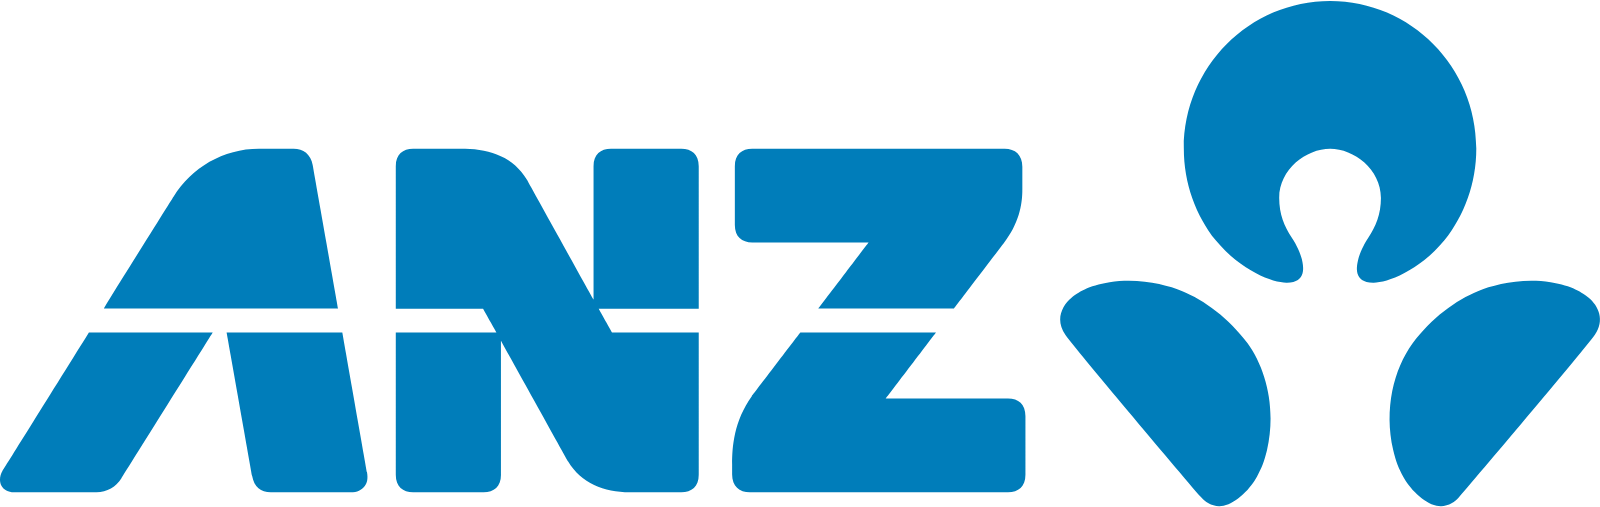 ANZ Bank logo large (transparent PNG)